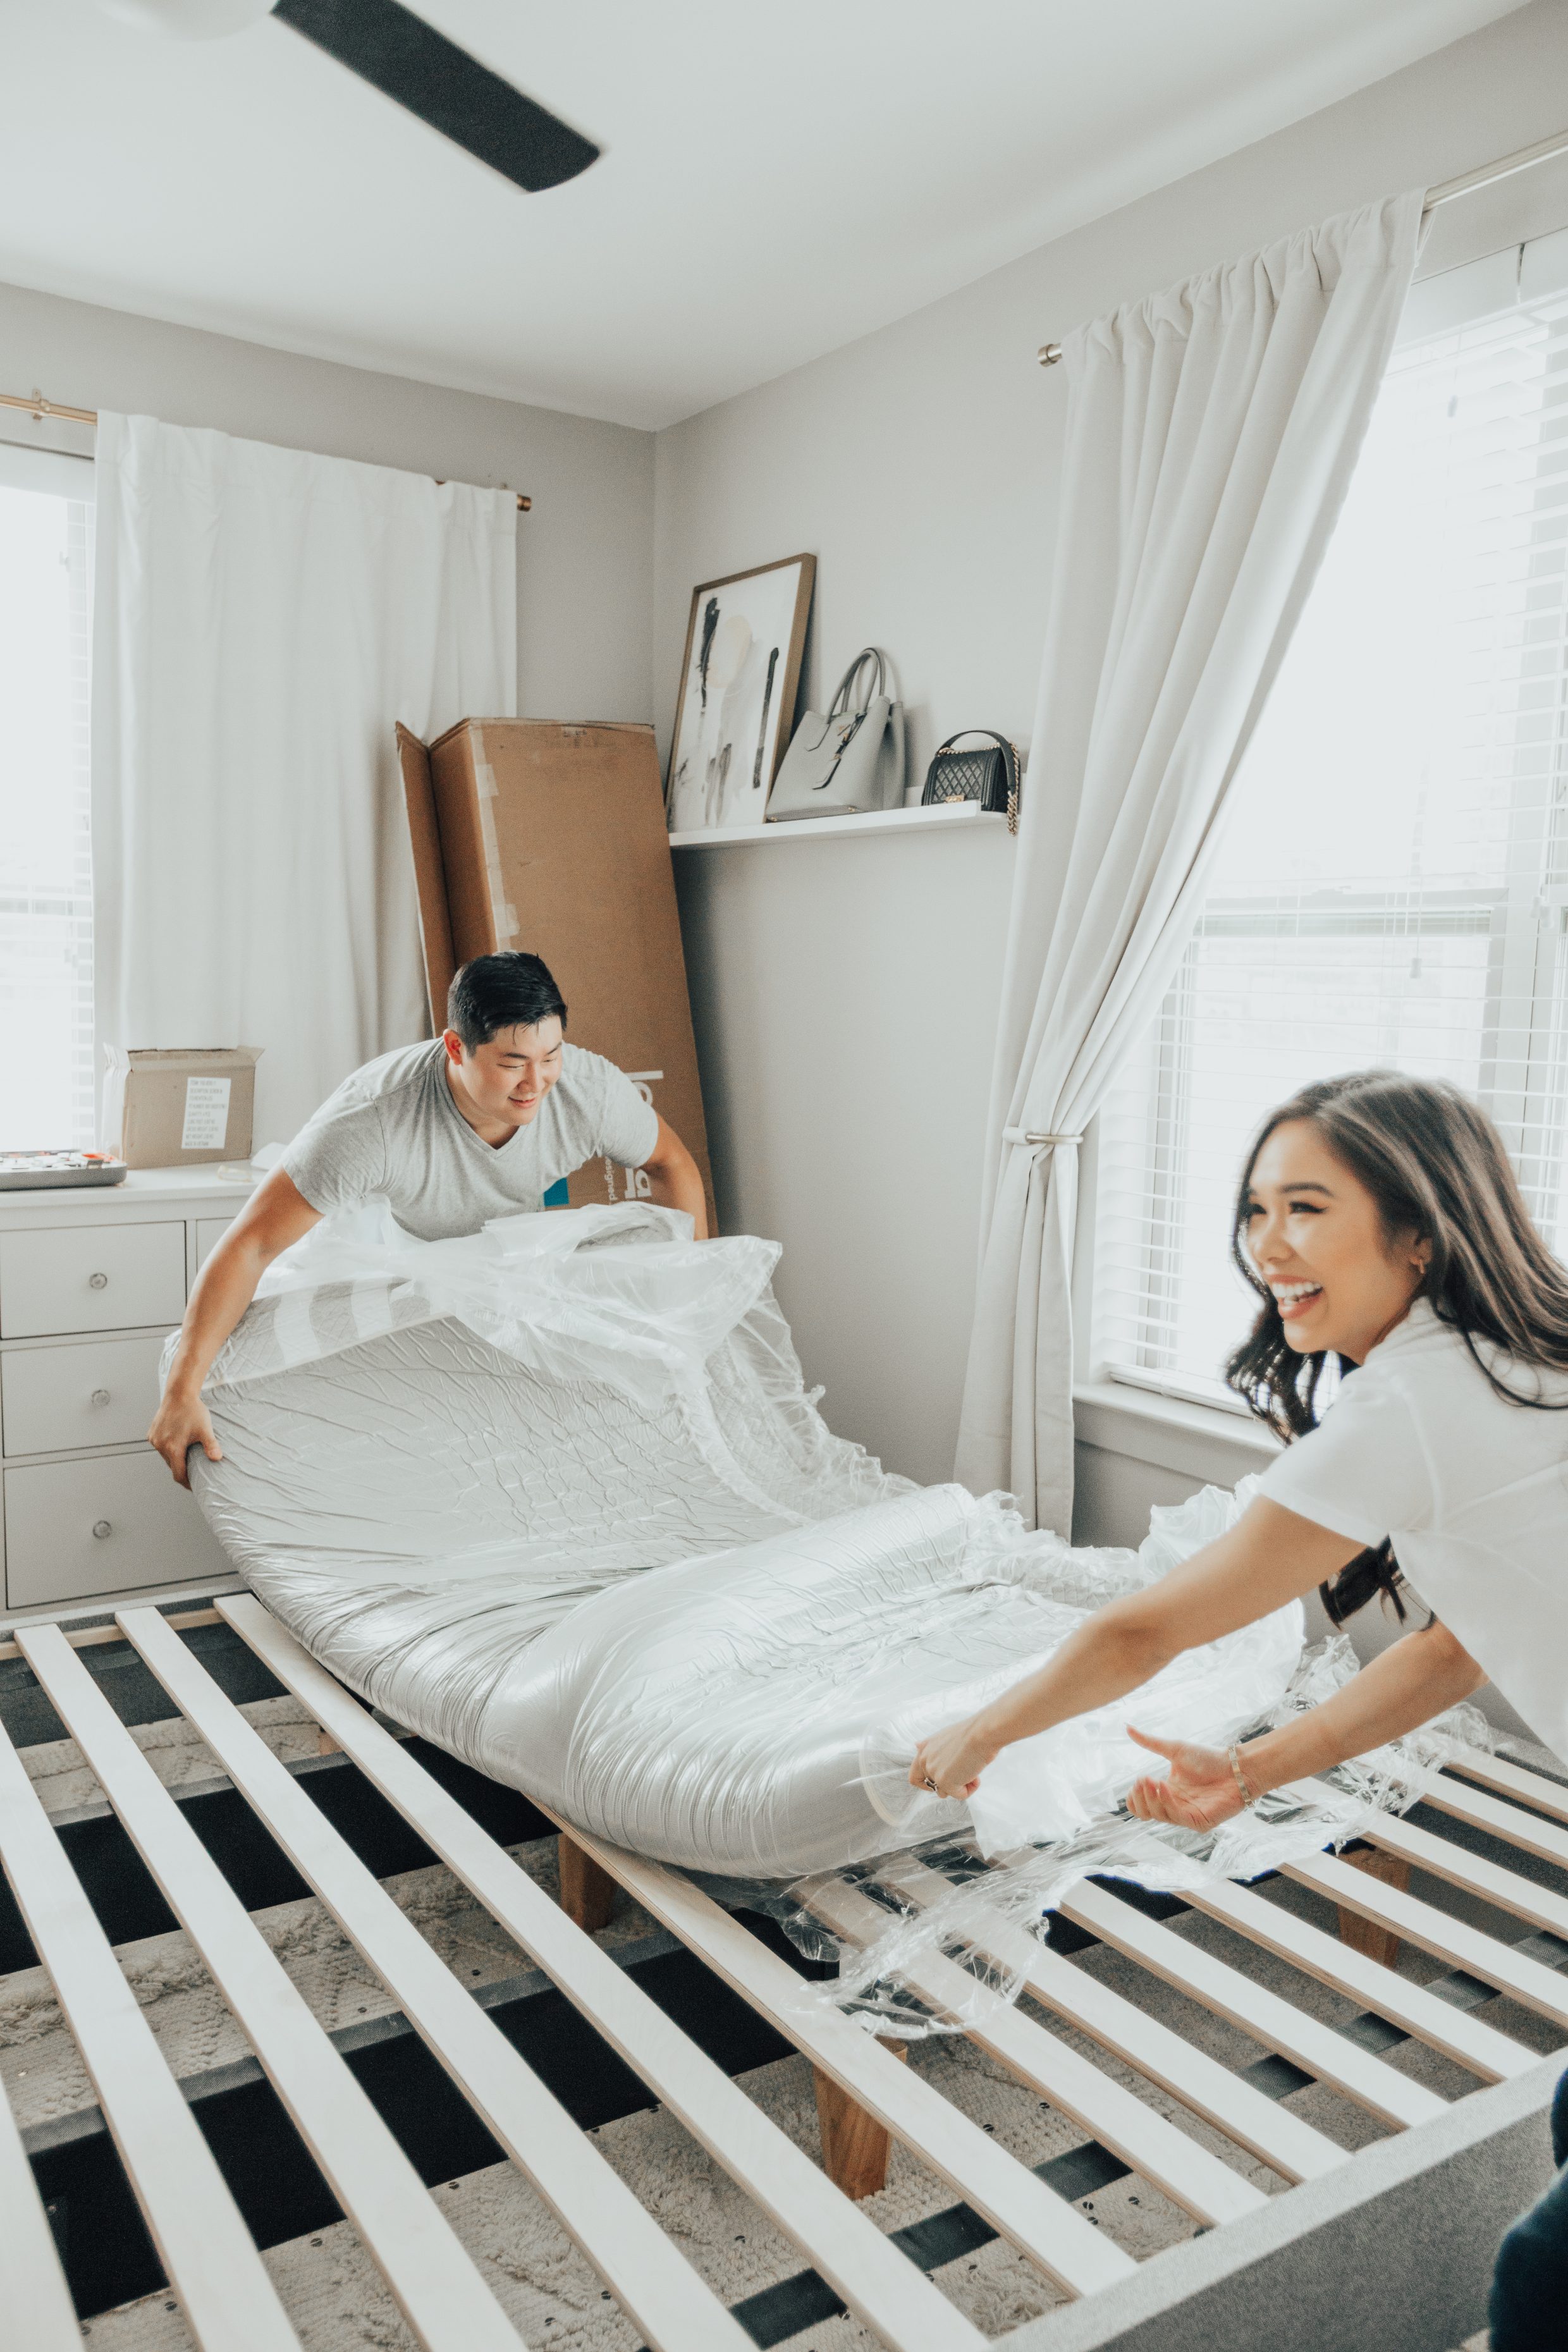 Why buying a mattress online is better - Leesa mattress review